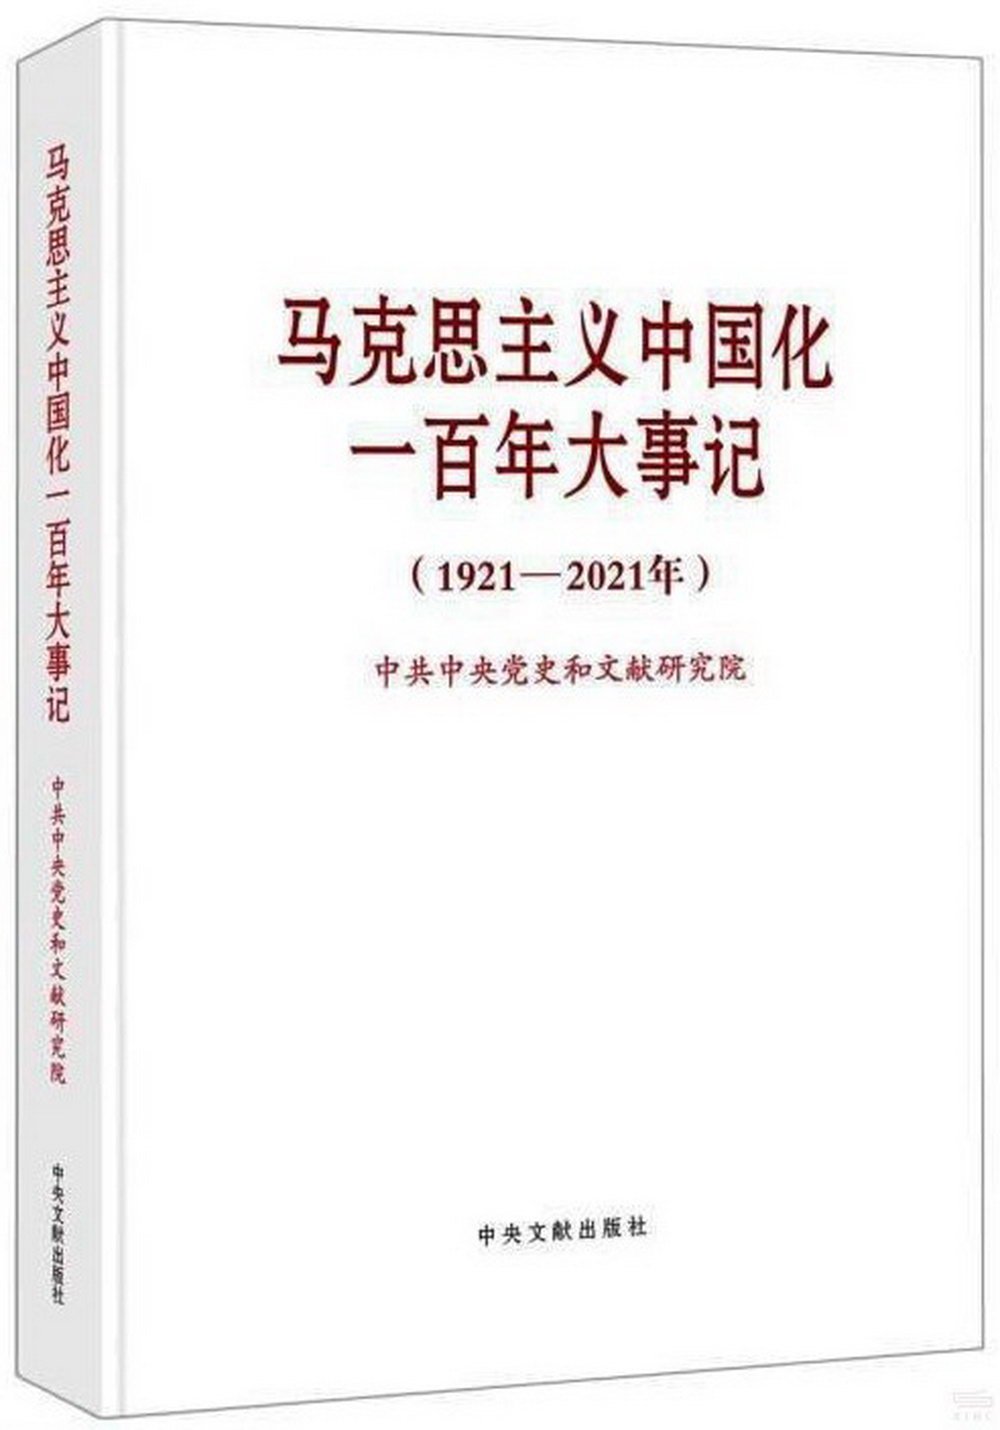 馬克思主義中國化一百年大事記(1921-2021年)